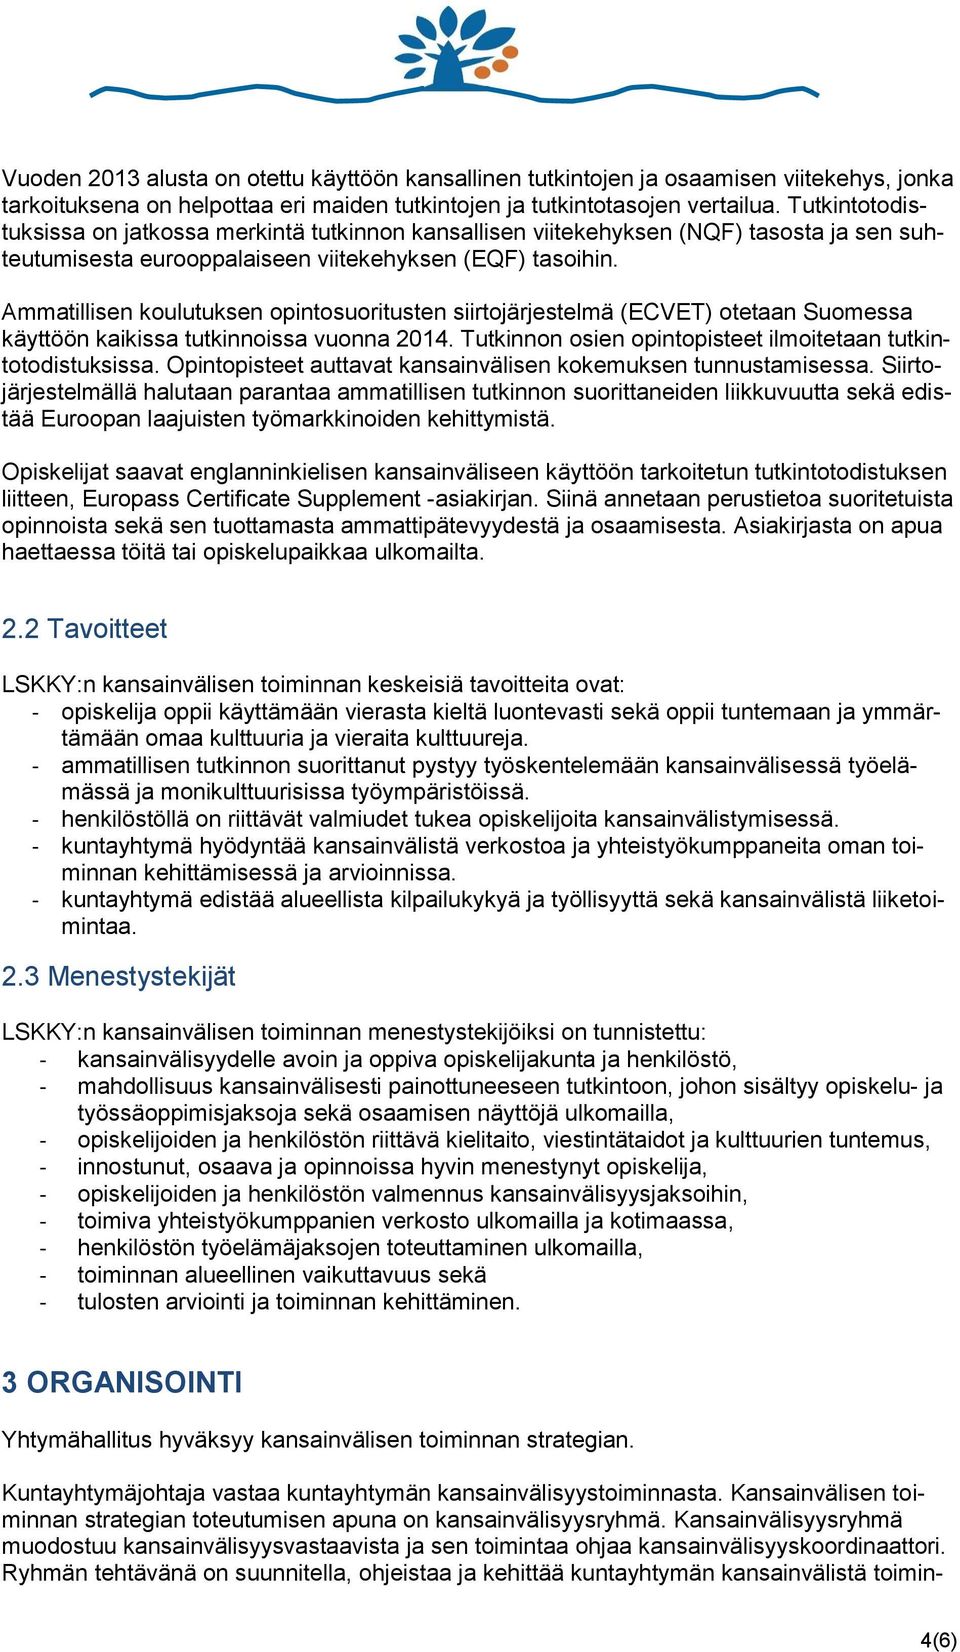 Ammatillisen koulutuksen opintosuoritusten siirtojärjestelmä (ECVET) otetaan Suomessa käyttöön kaikissa tutkinnoissa vuonna 2014. Tutkinnon osien opintopisteet ilmoitetaan tutkintotodistuksissa.